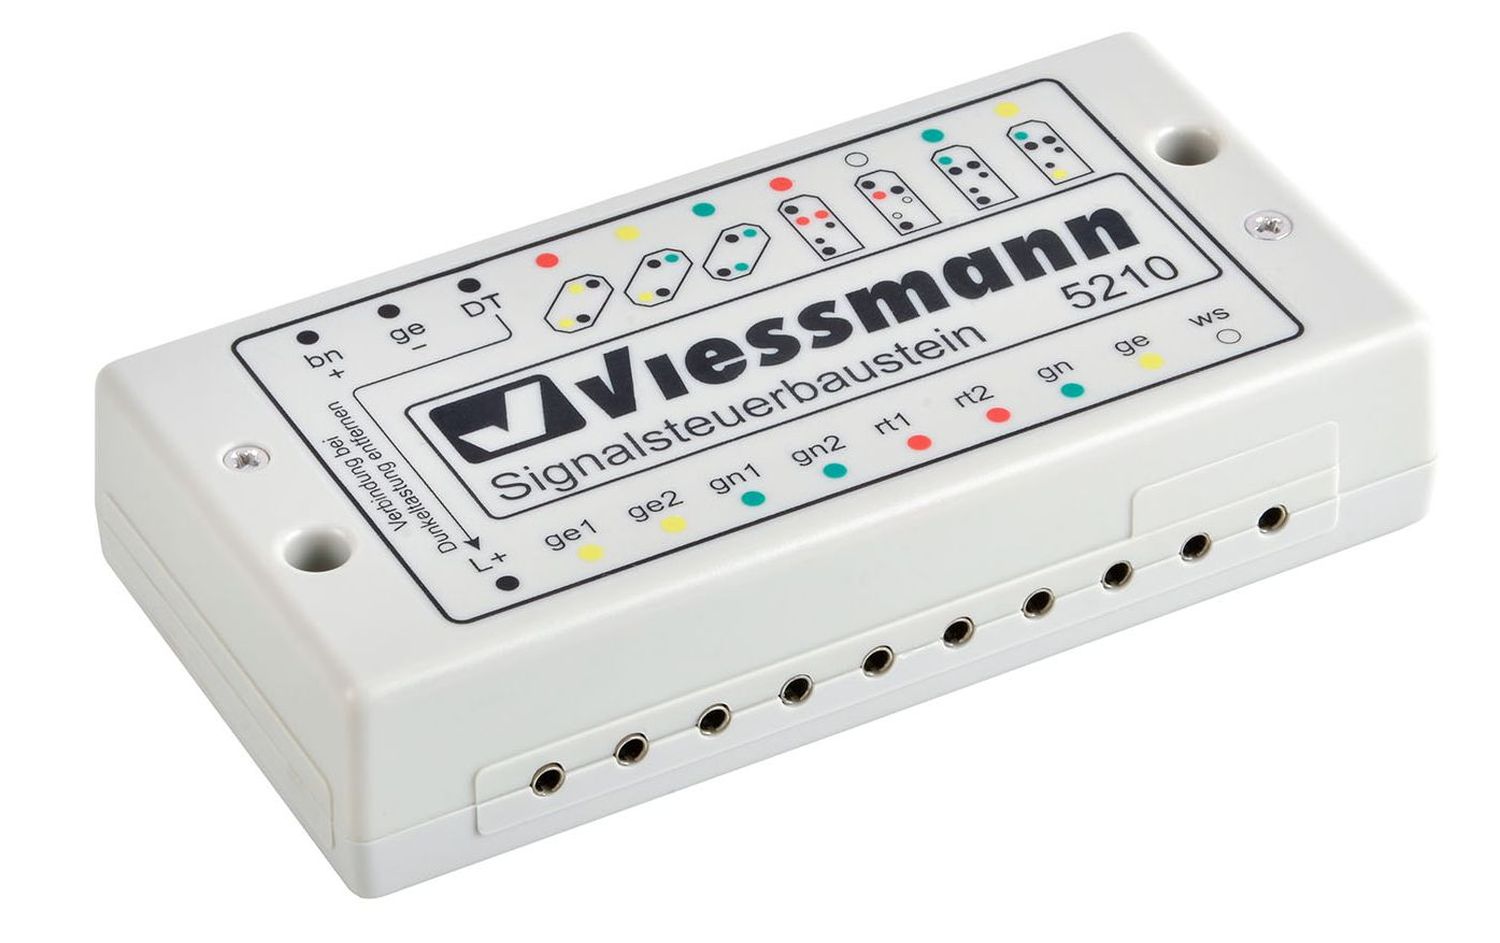 Viessmann 5210 - Signalsteuerbaustein 1 bzw. 2fach